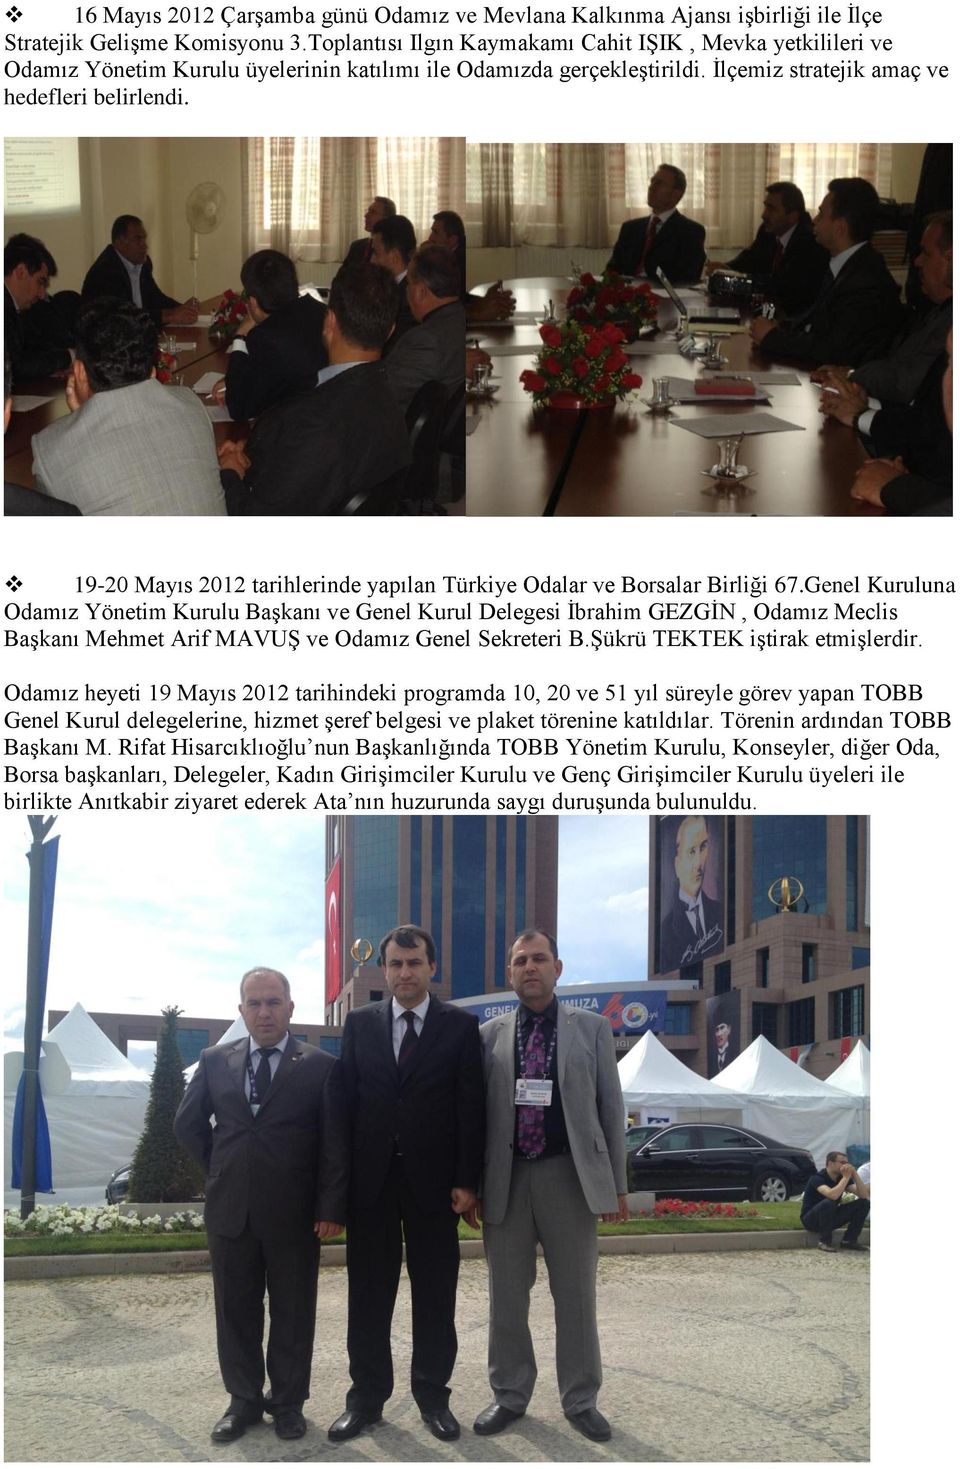 19-20 Mayıs 2012 tarihlerinde yapılan Türkiye Odalar ve Borsalar Birliği 67.